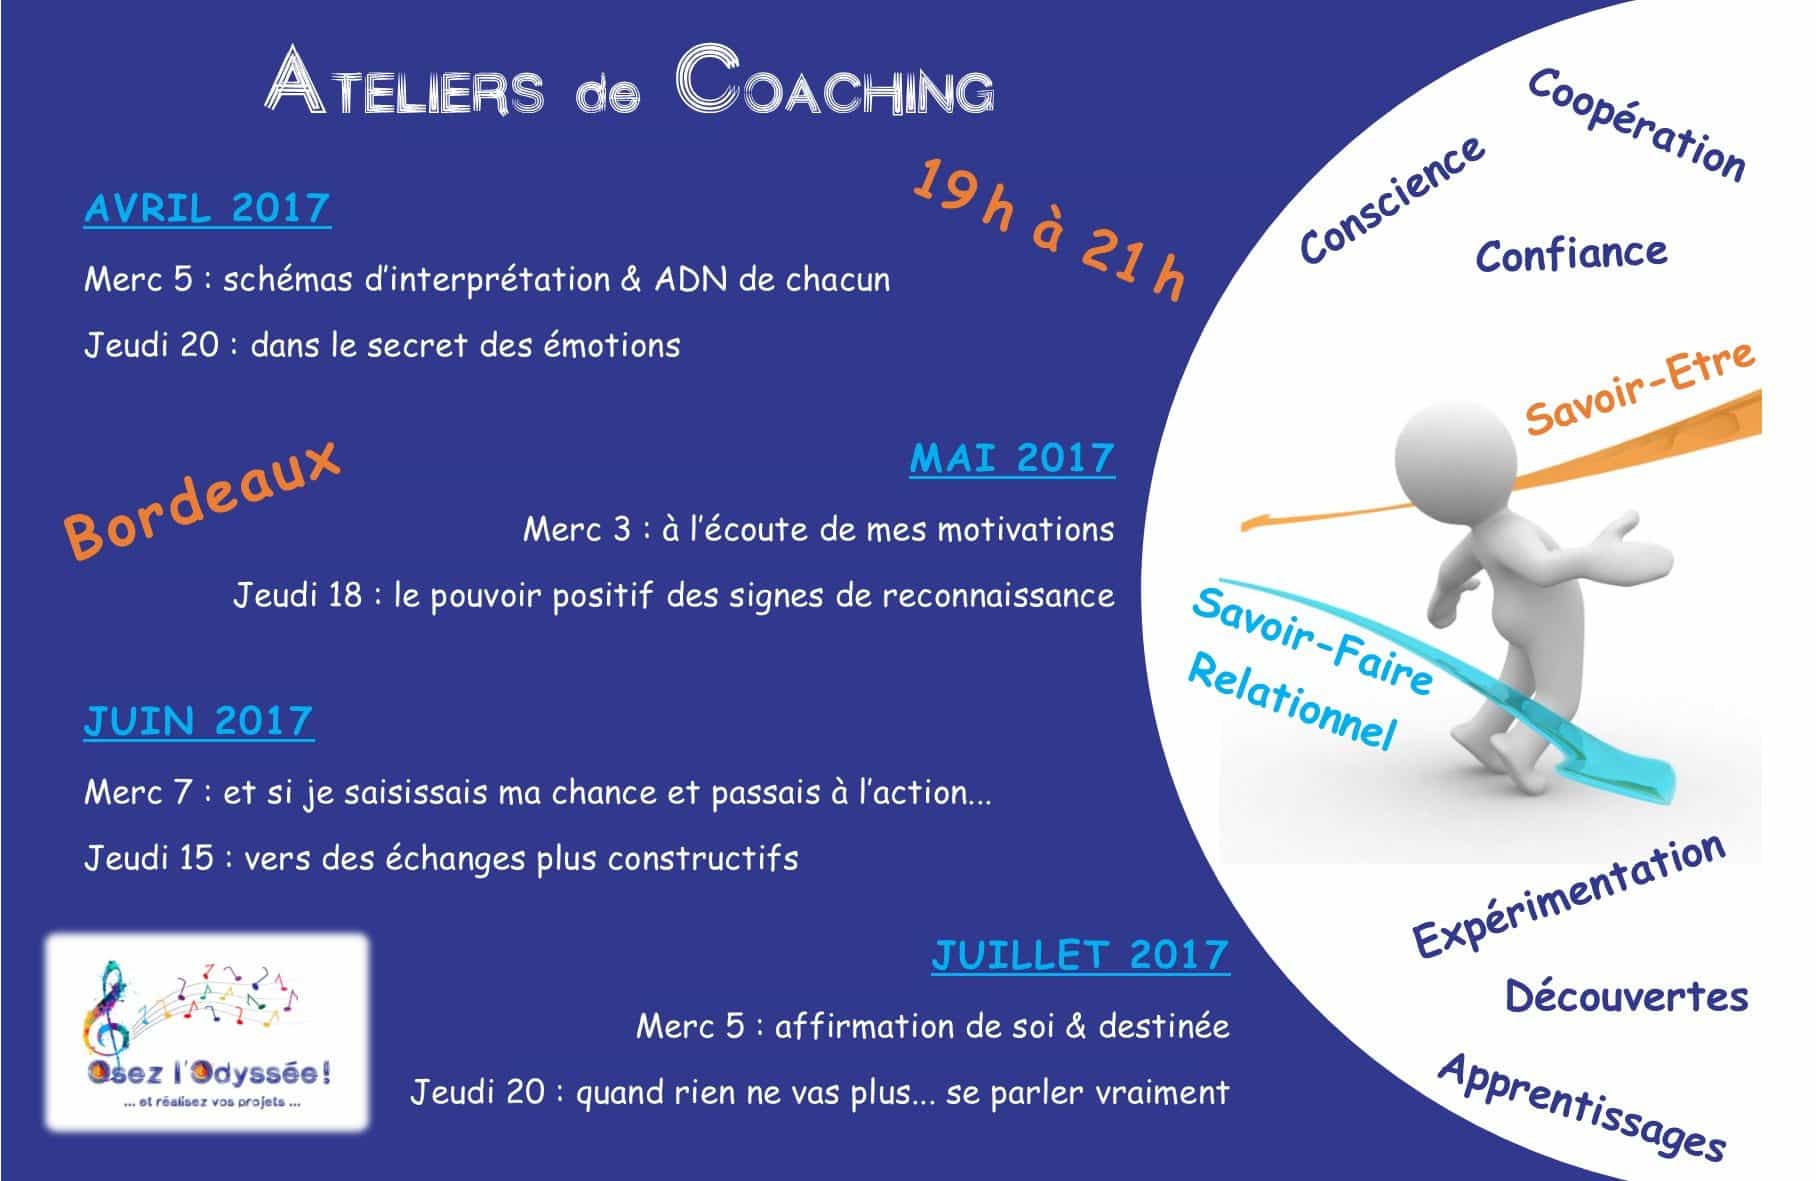 2017 sem1 Ateliers Coaching à Bordeaux Osez l'Odyssee